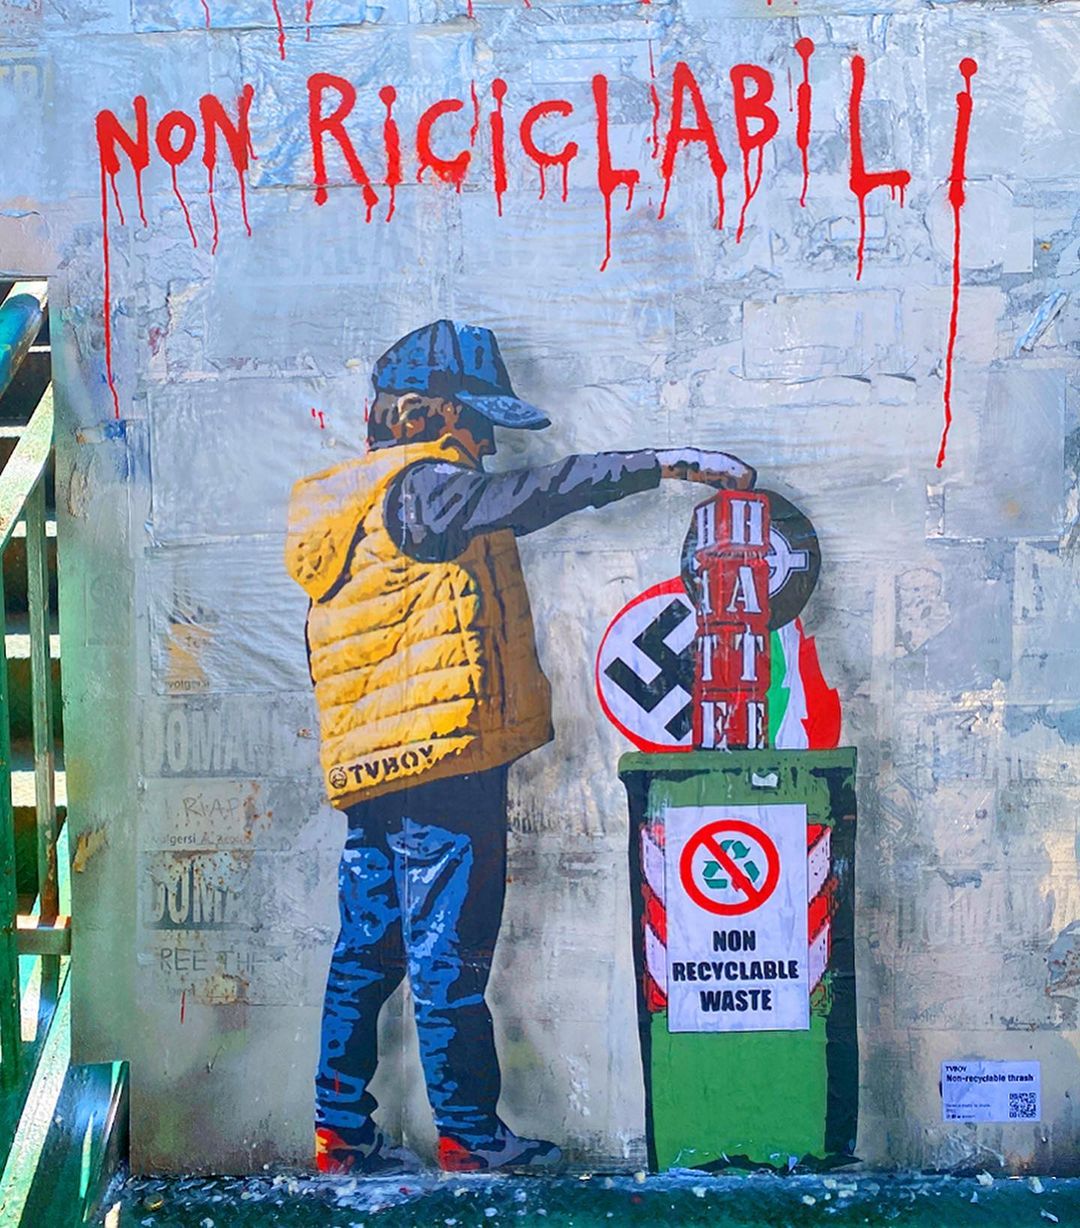 Il nuovo murals di TvBoy apparso l'11 settembre a Milano (Instagram)